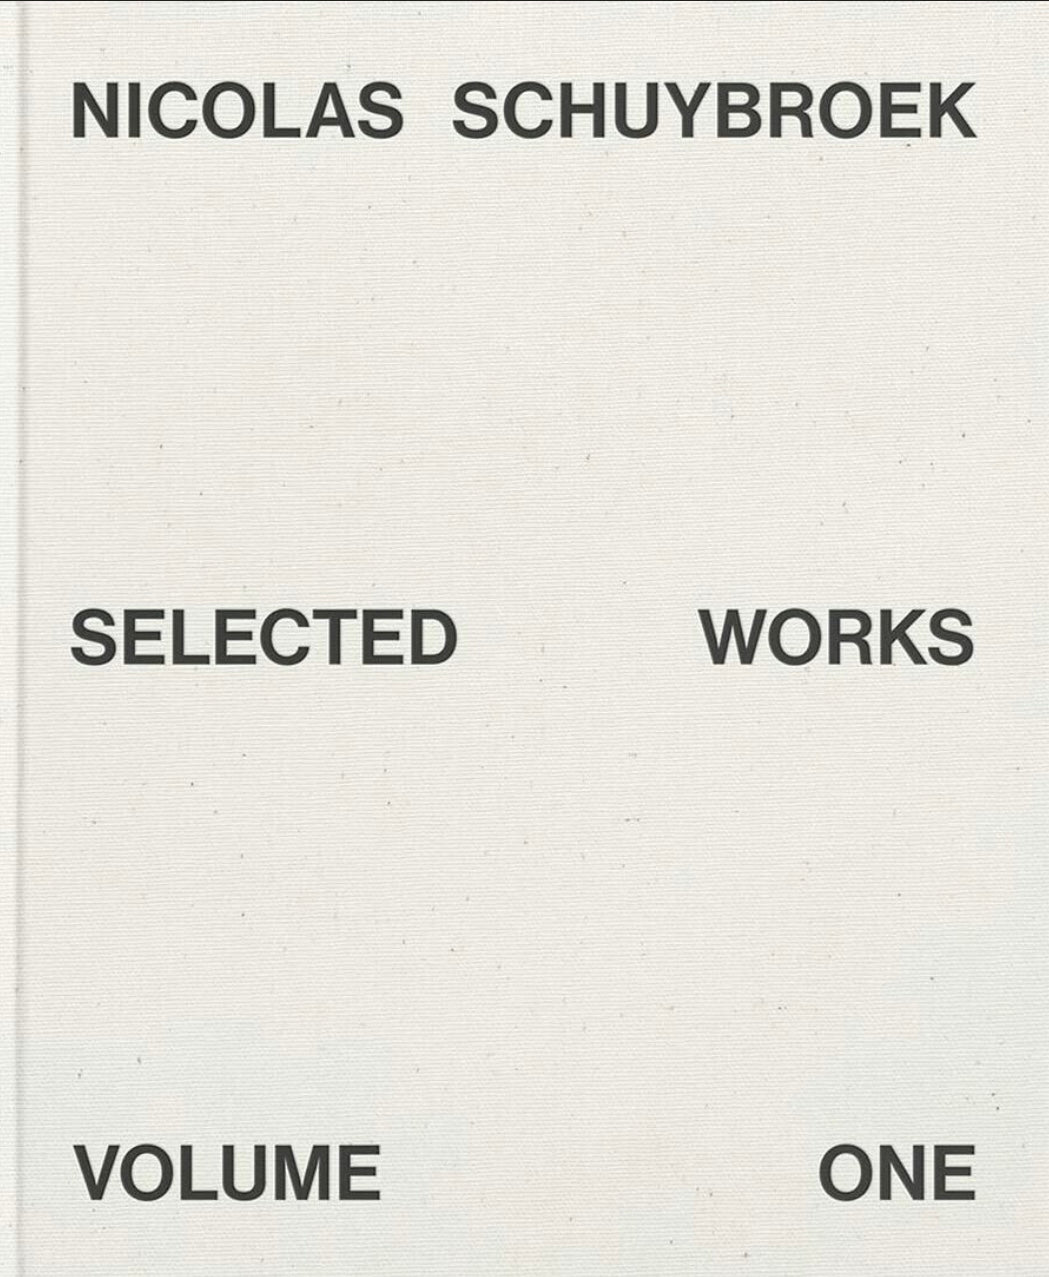 NICOLAS SCHUYBROEK: SELECTED WORKS